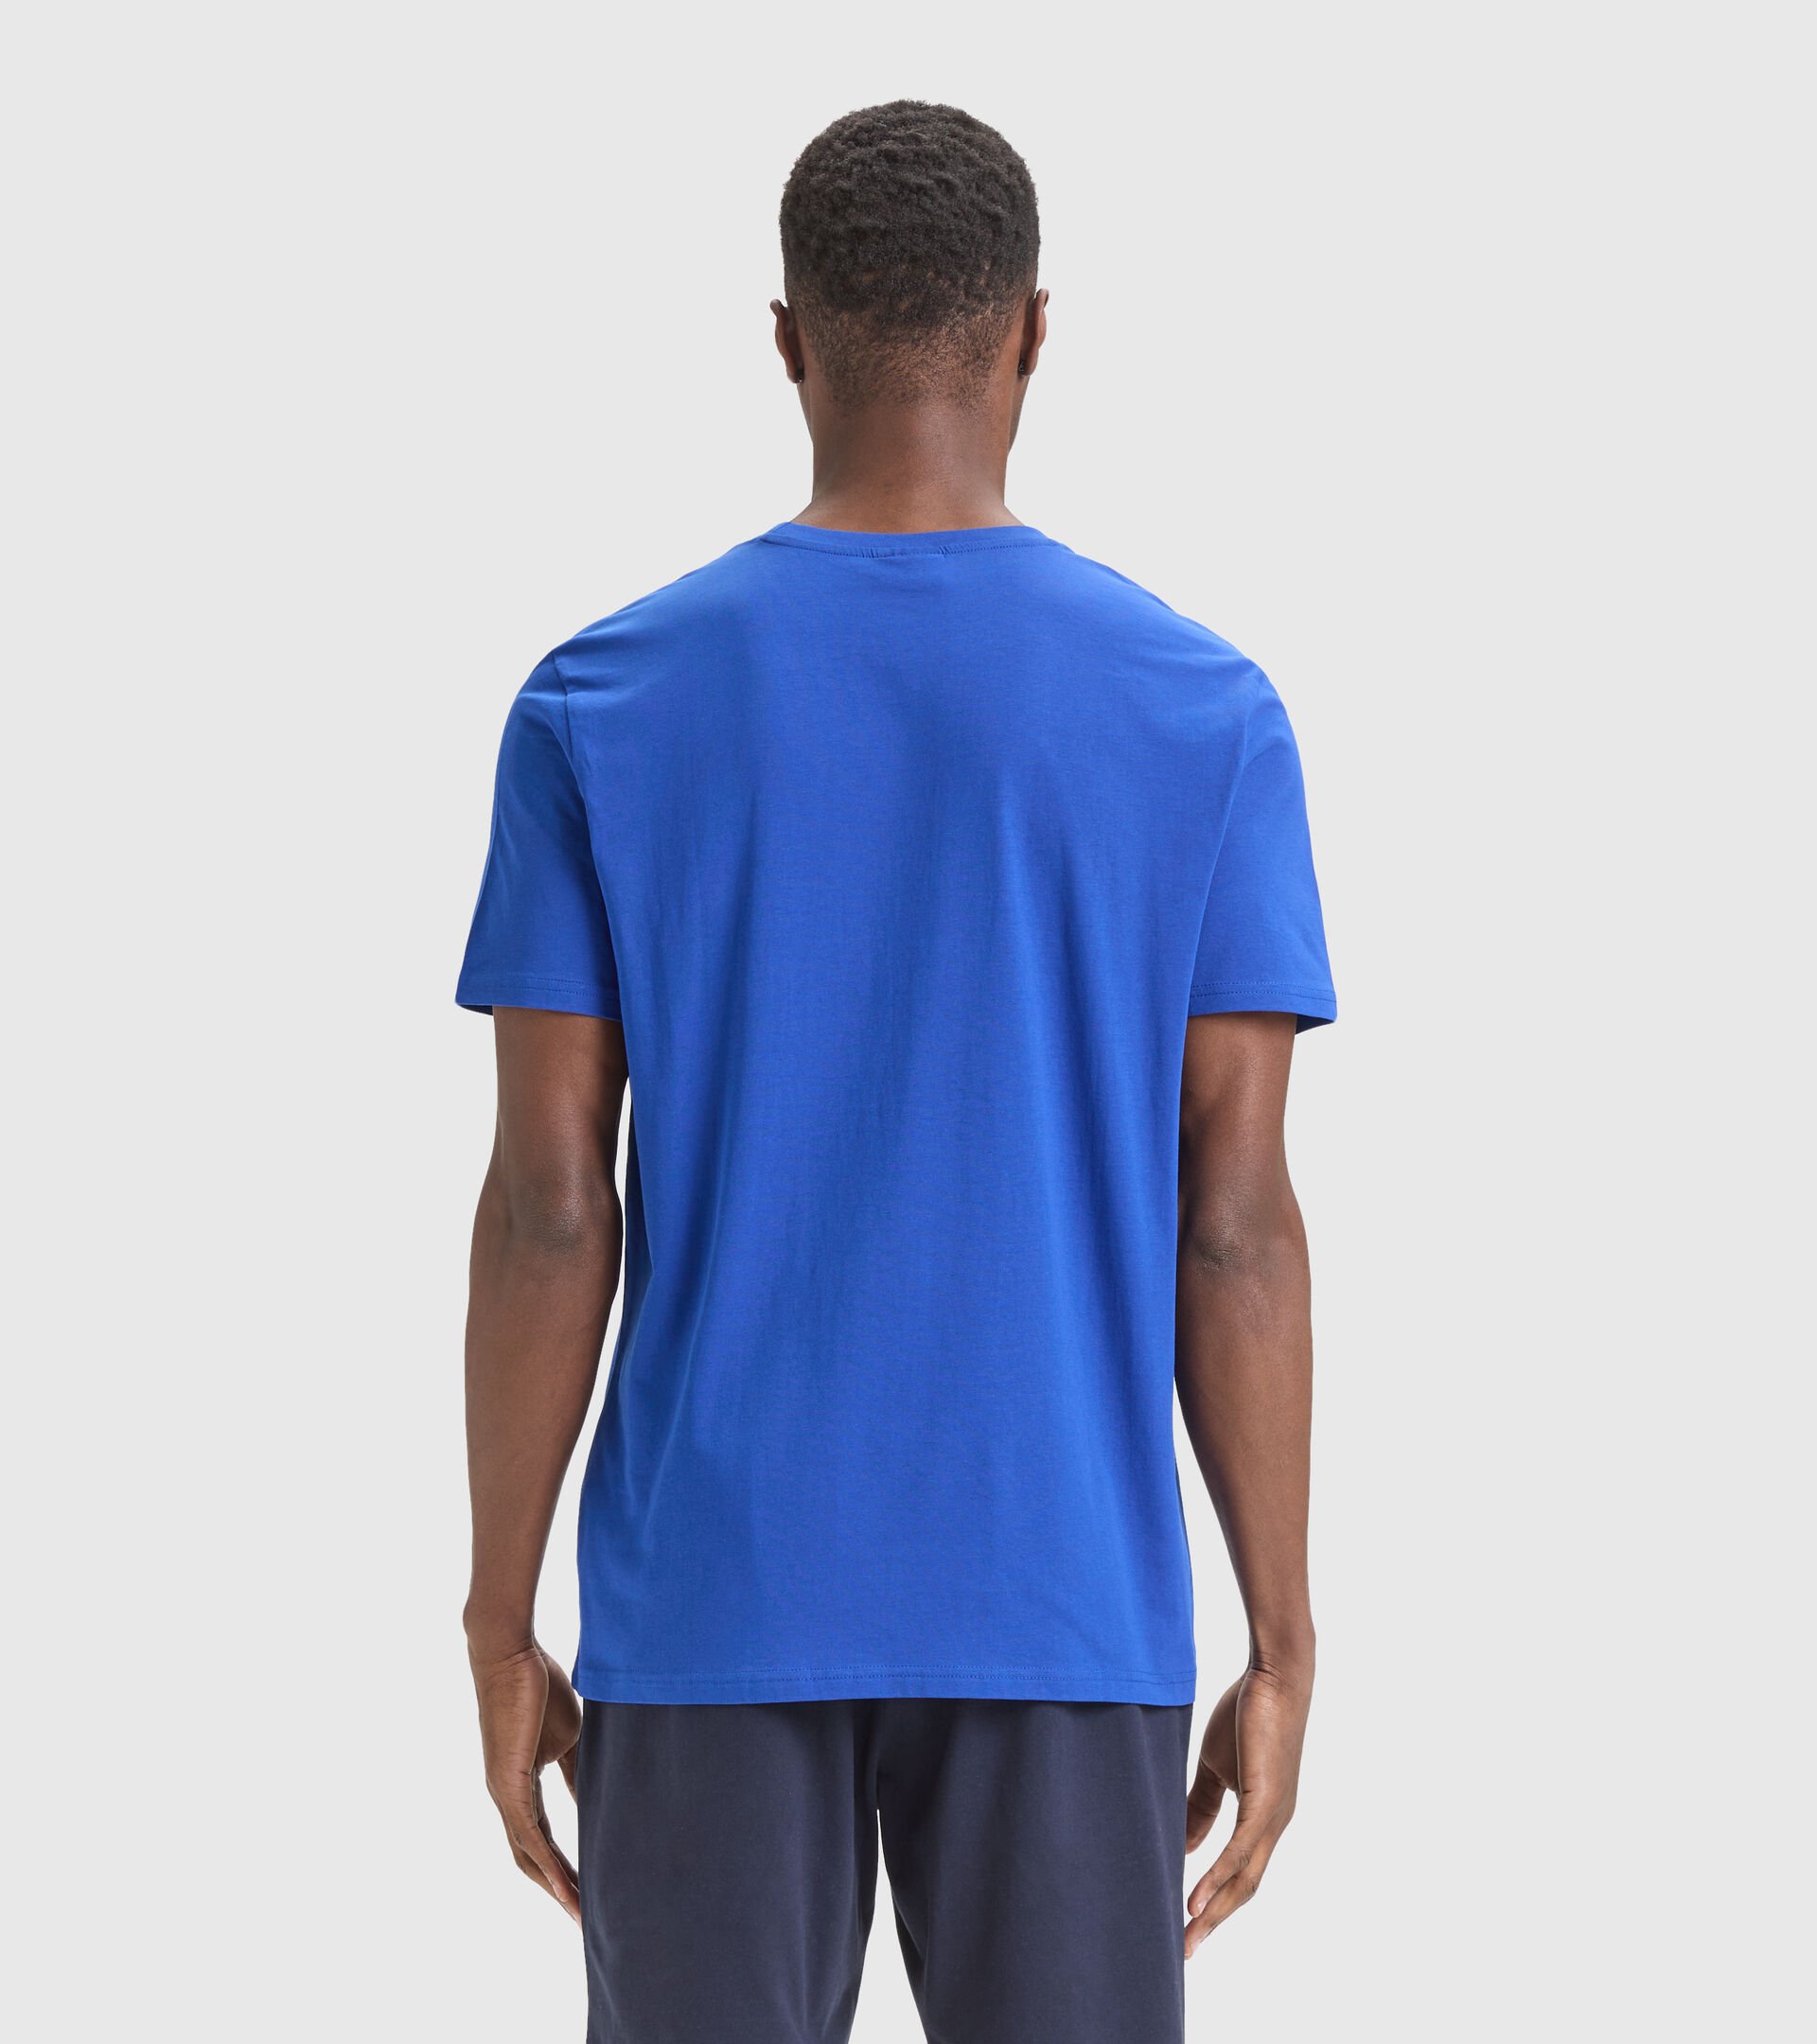 Cotton T-shirt - Men T-SHIRT SS CORE TRUE BLUE - Diadora